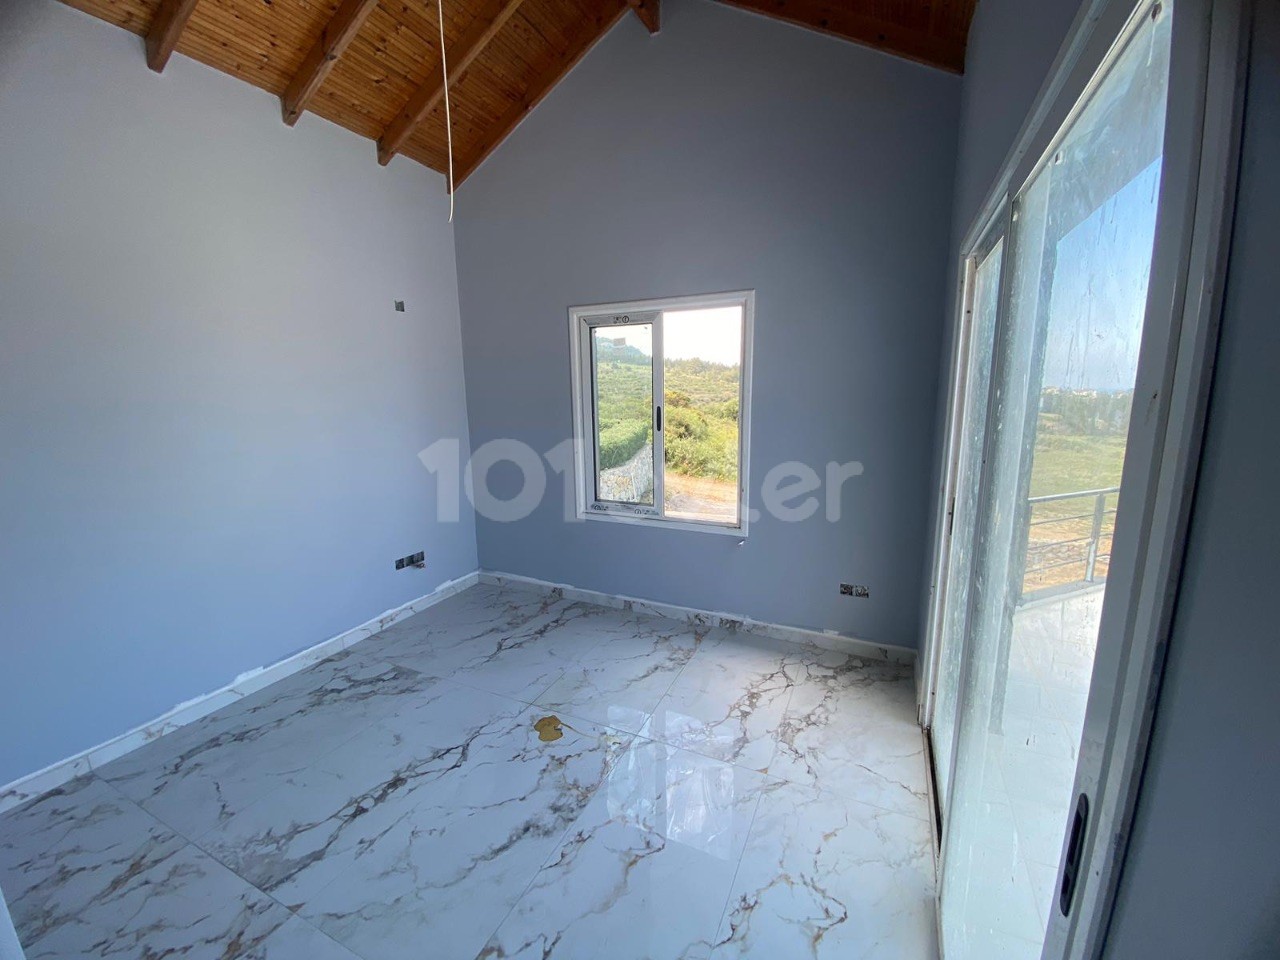 For Sale 4+1 Villa with Private Pool in Kyrenia/Lapta